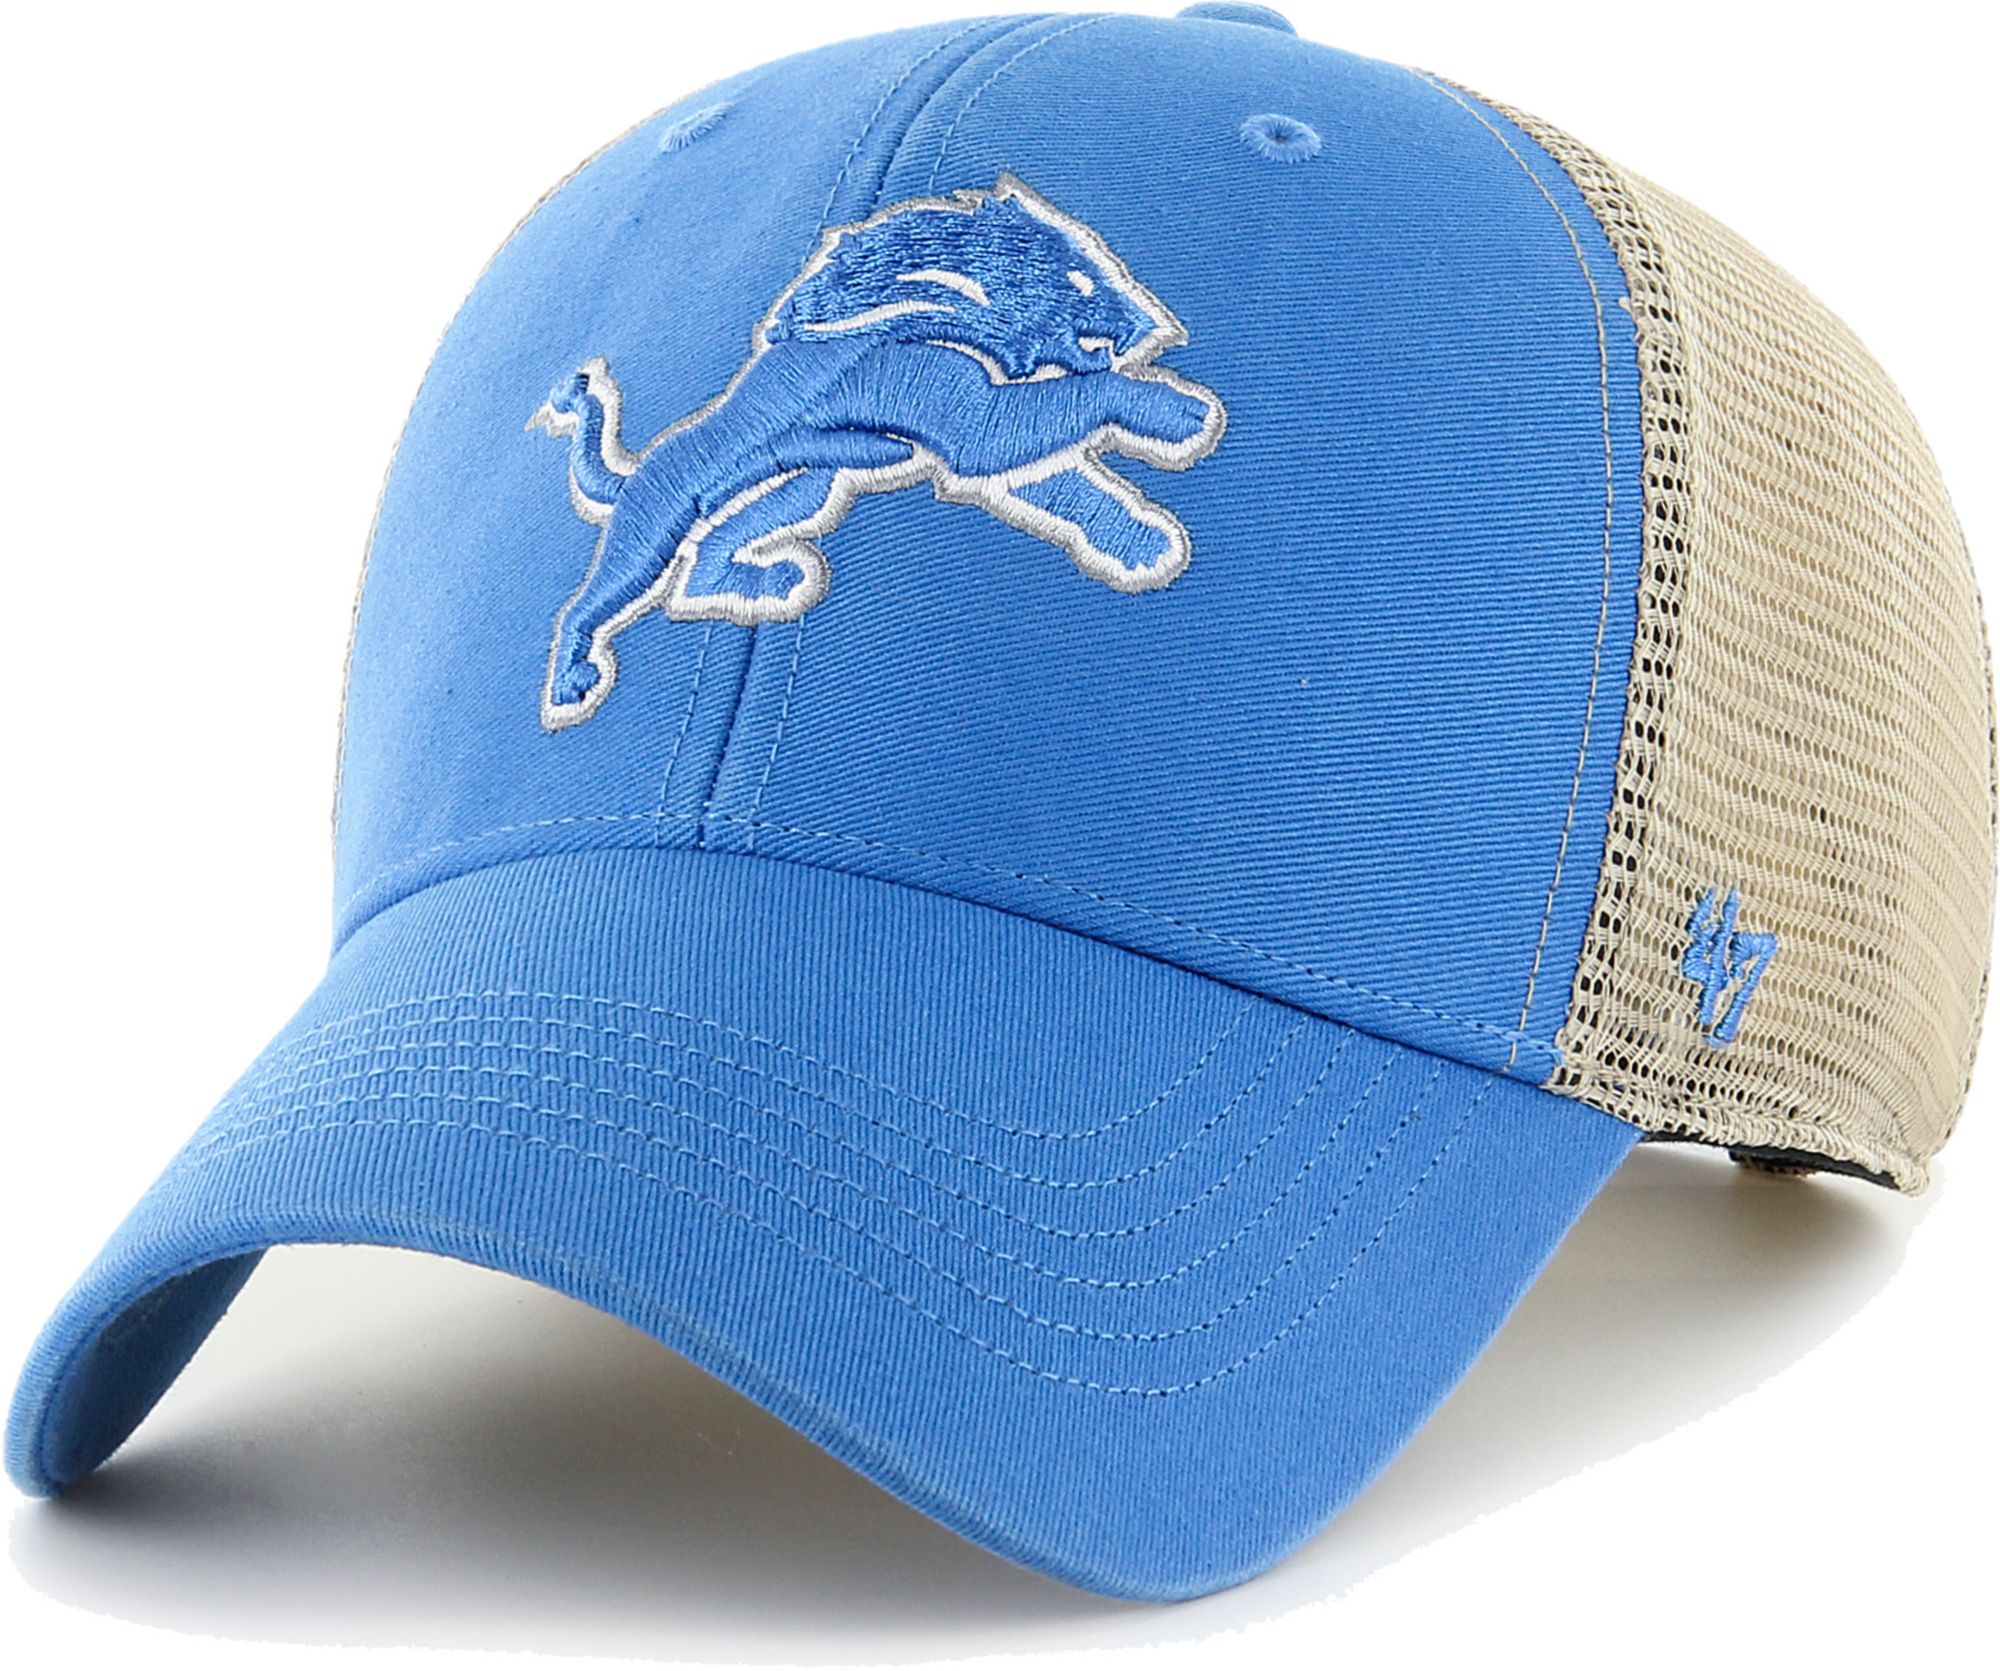 47 Men's Detroit Tigers Charcoal Adjustable Trucker Hat